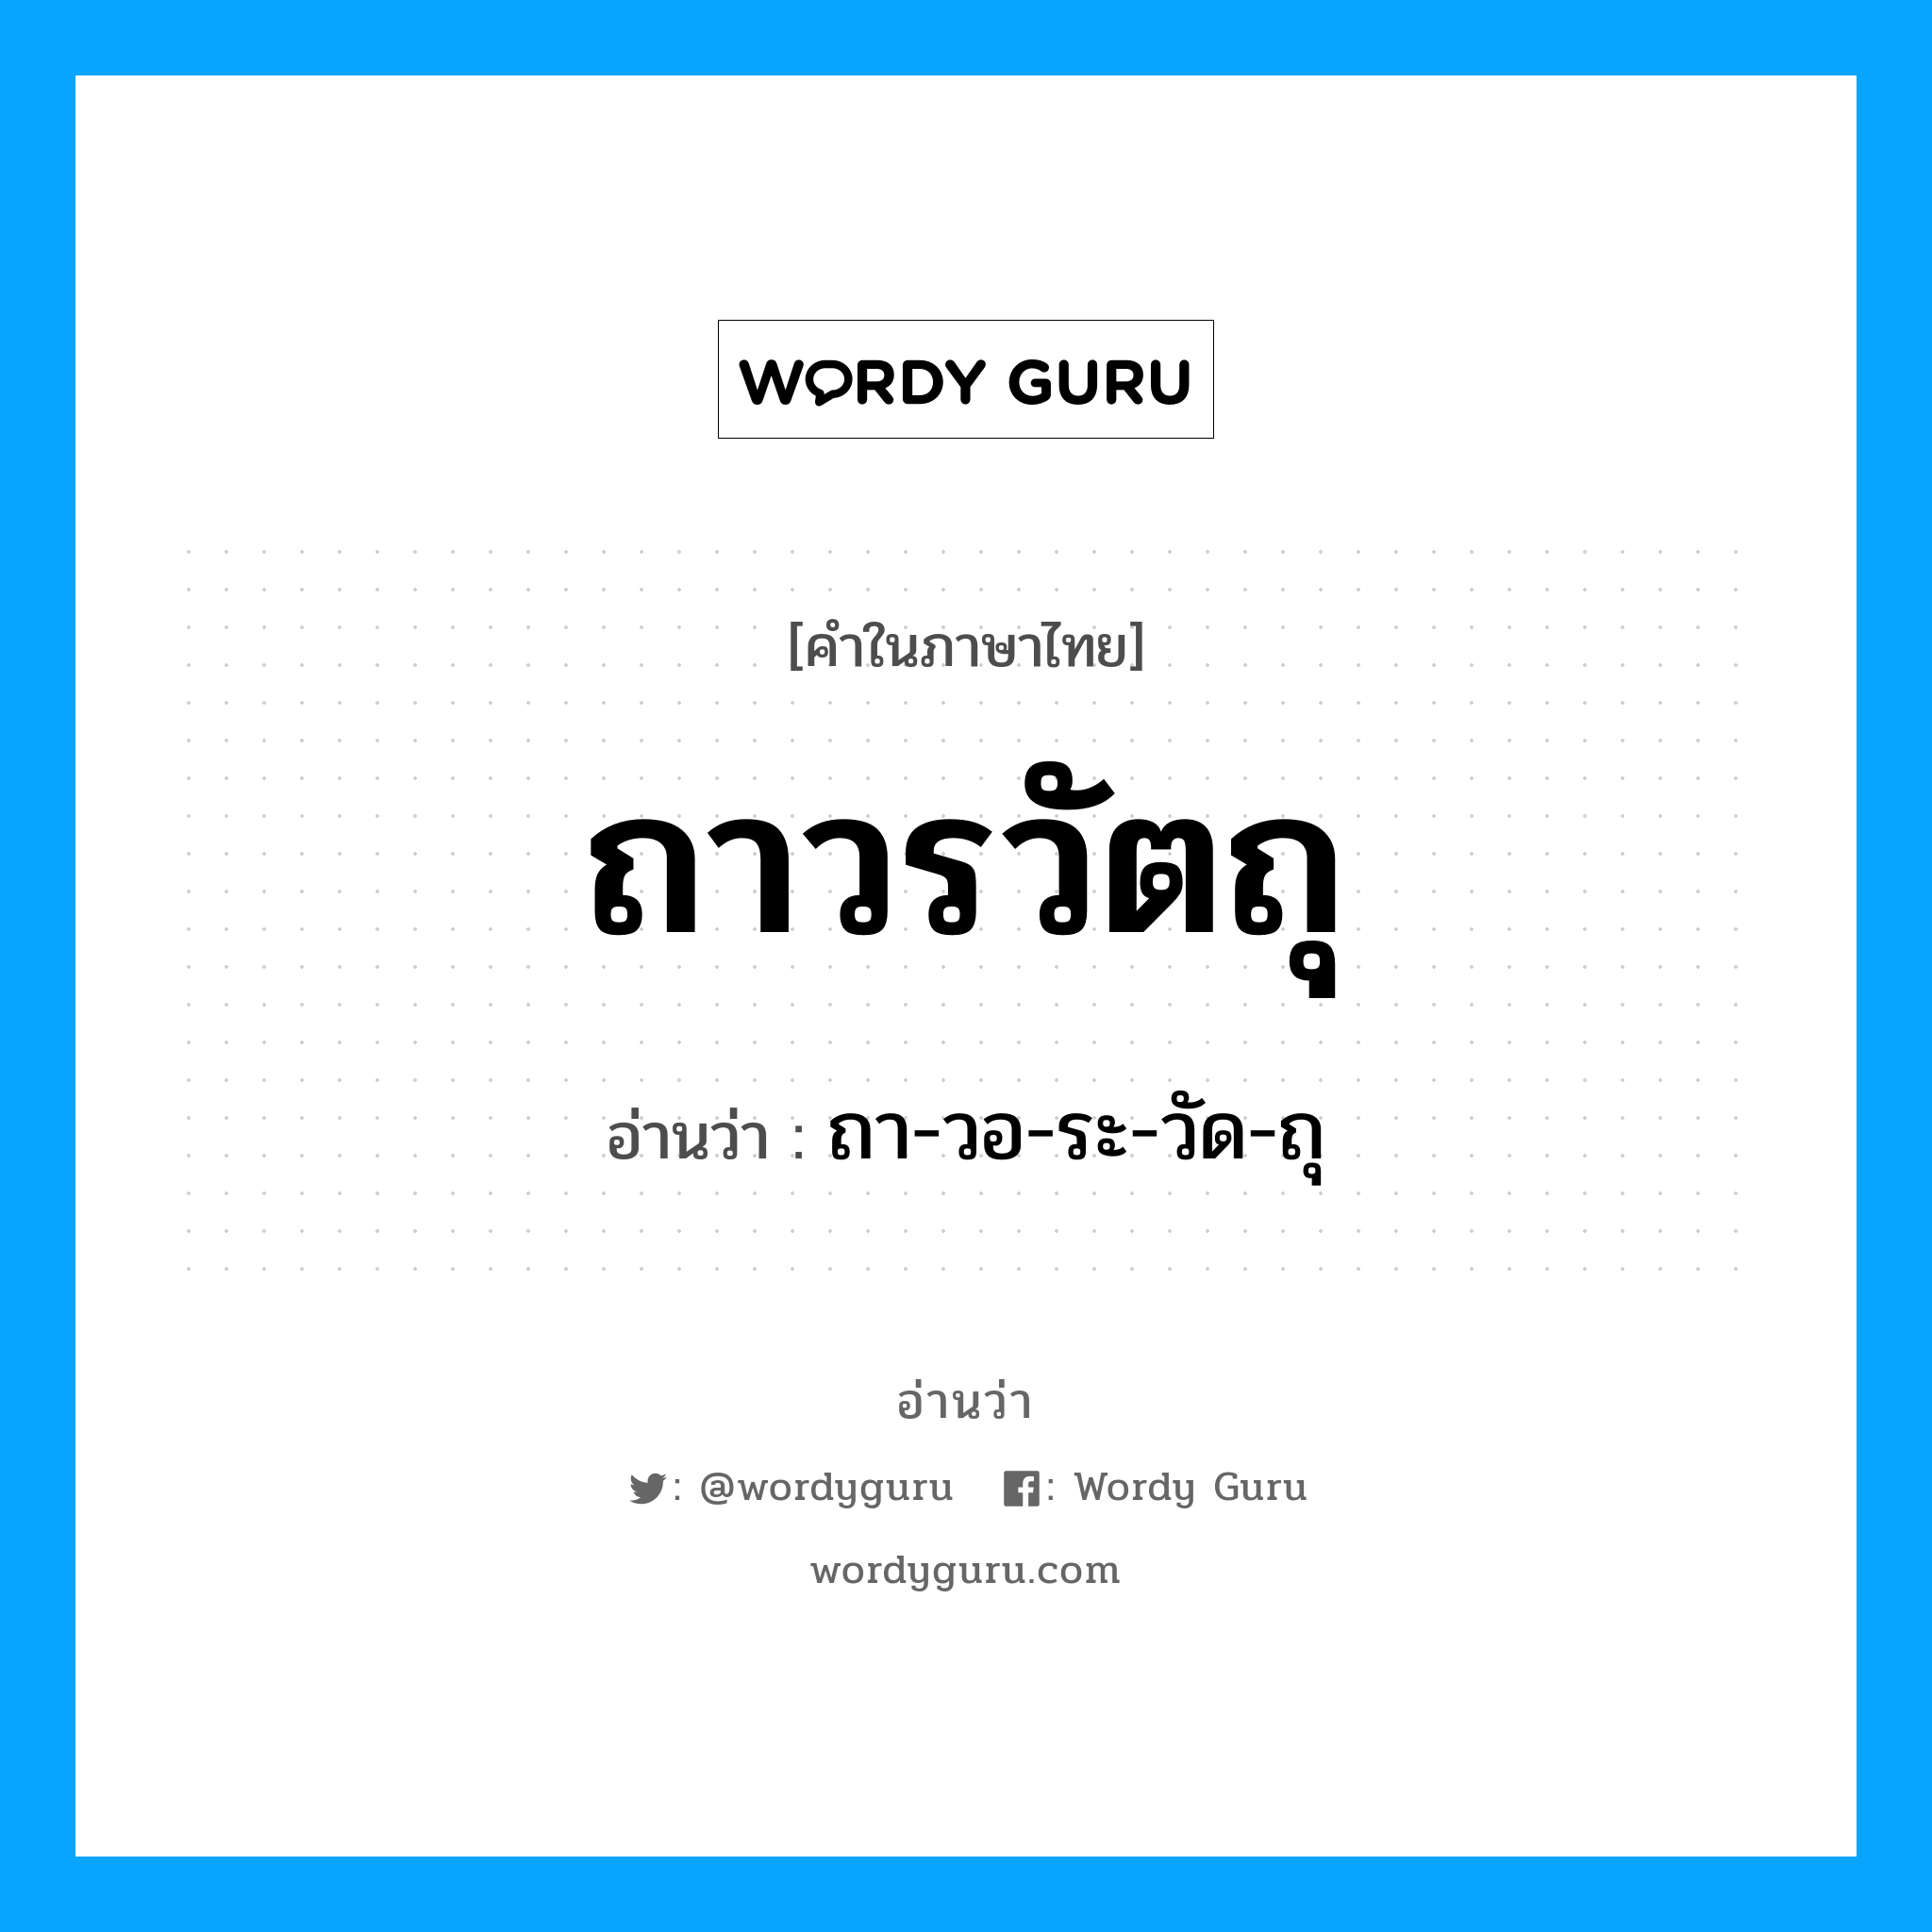 ถา-วอ-ระ-วัด-ถุ เป็นคำอ่านของคำไหน?, คำในภาษาไทย ถา-วอ-ระ-วัด-ถุ อ่านว่า ถาวรวัตถุ